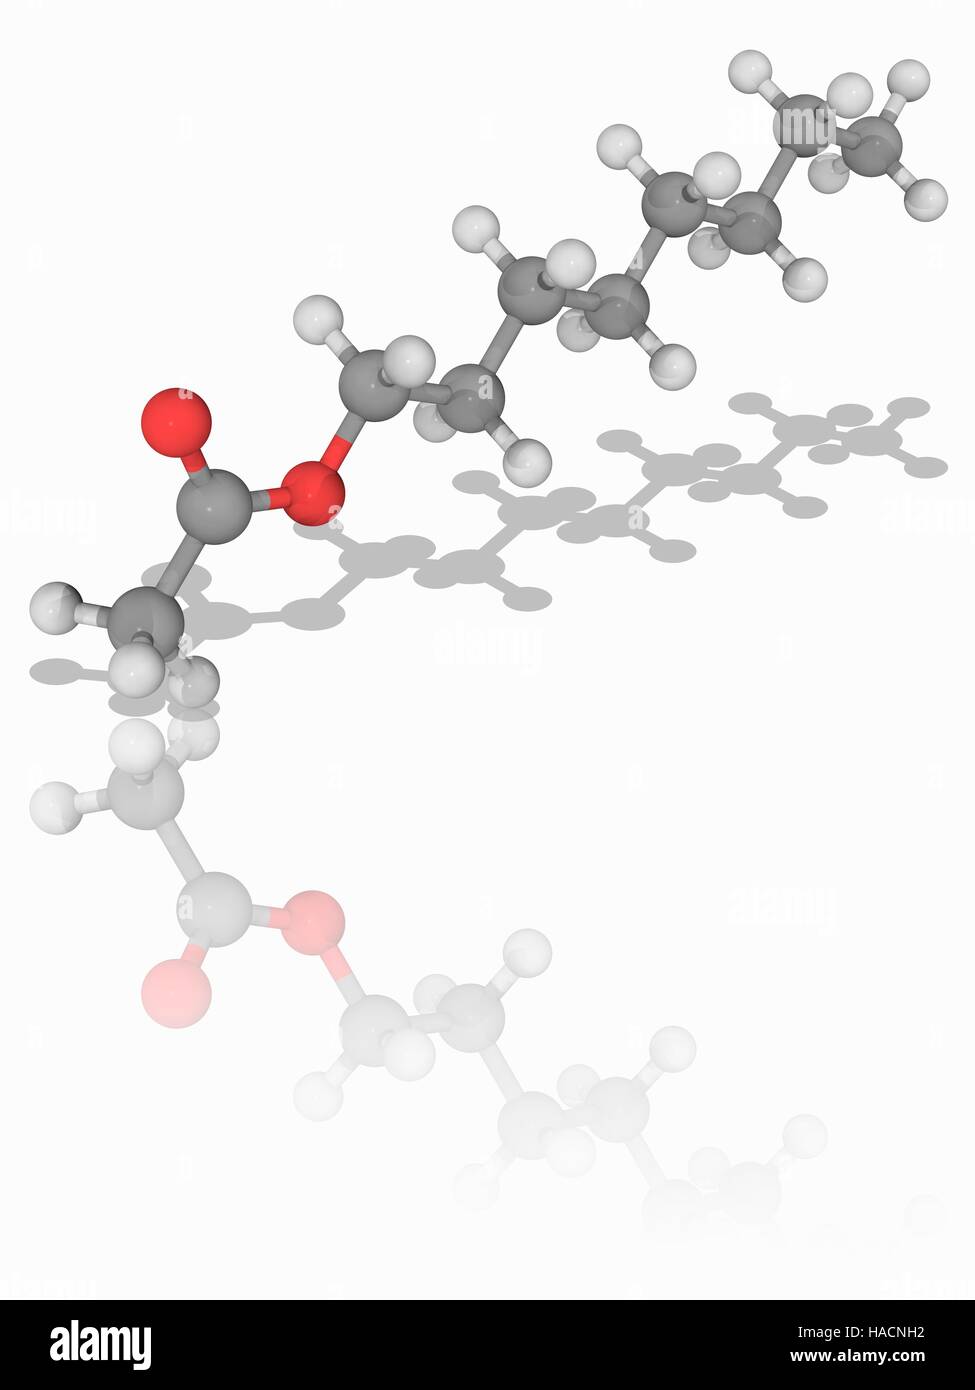 Octyl-Acetat. Molekülmodell der organischen Verbindung Octyl-Acetat (C10.  H20. O2). Von Octanol und Essigsäure gebildet, ist es ein Ester, die als  Grundlage für künstliche Aromastoffe orange verwendet wird. Atome als  Kugeln dargestellt werden